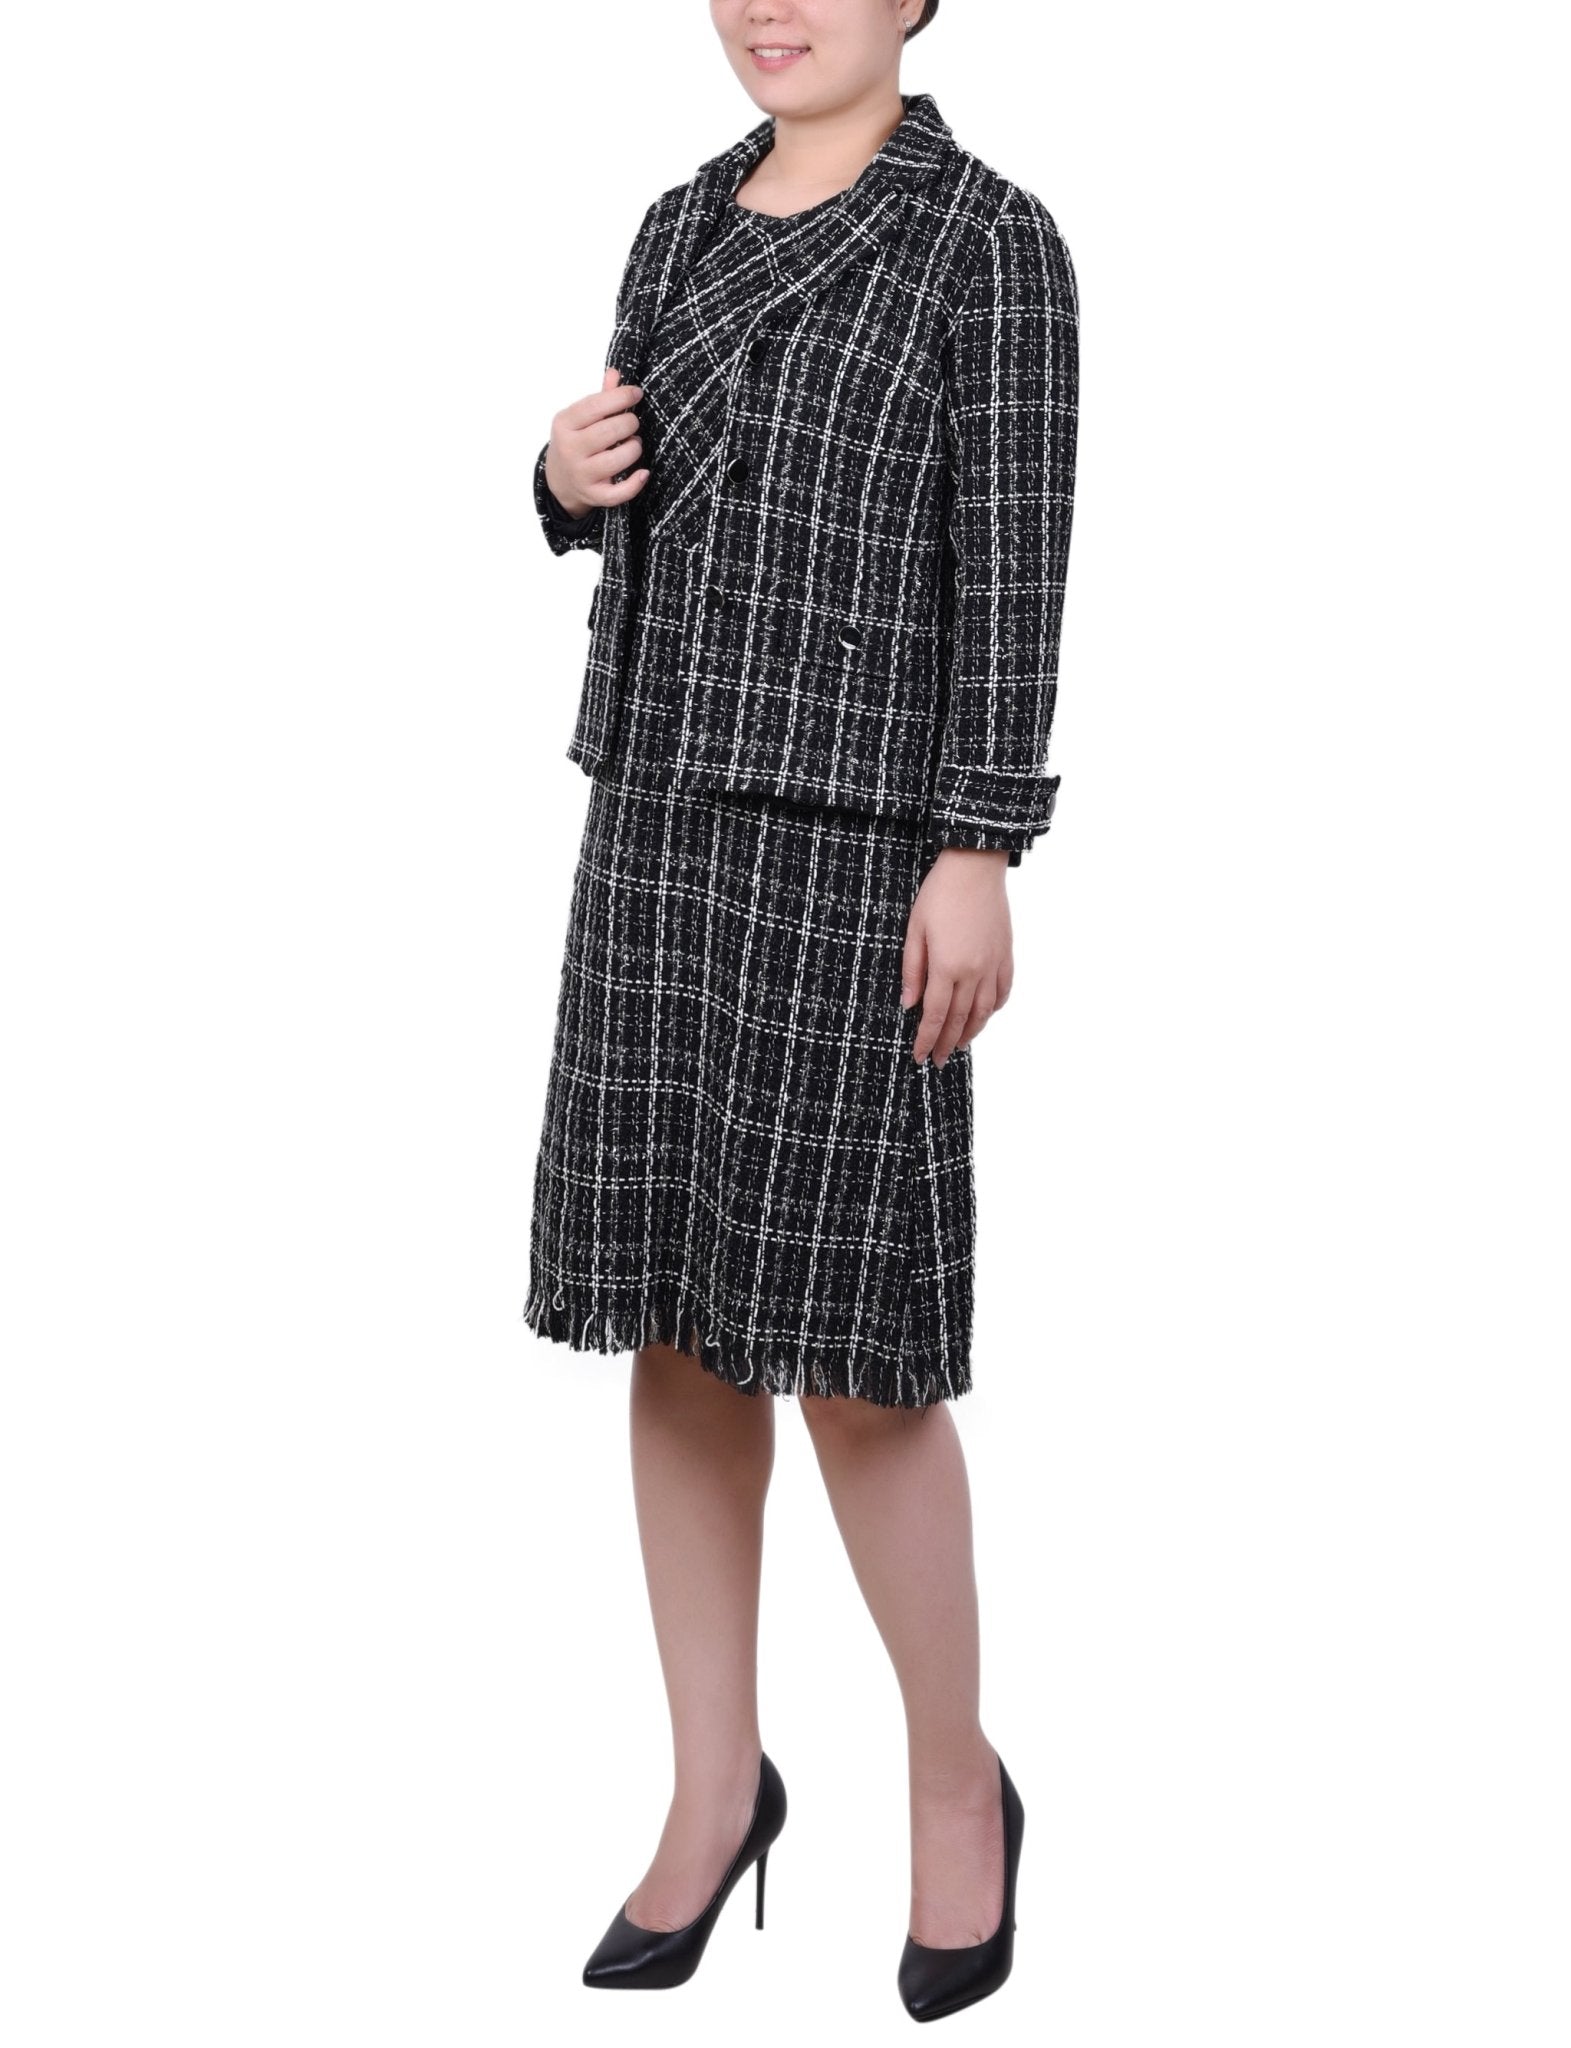 Long Sleeve Tweed Jacket With Dress - Petite - DressbarnDresses